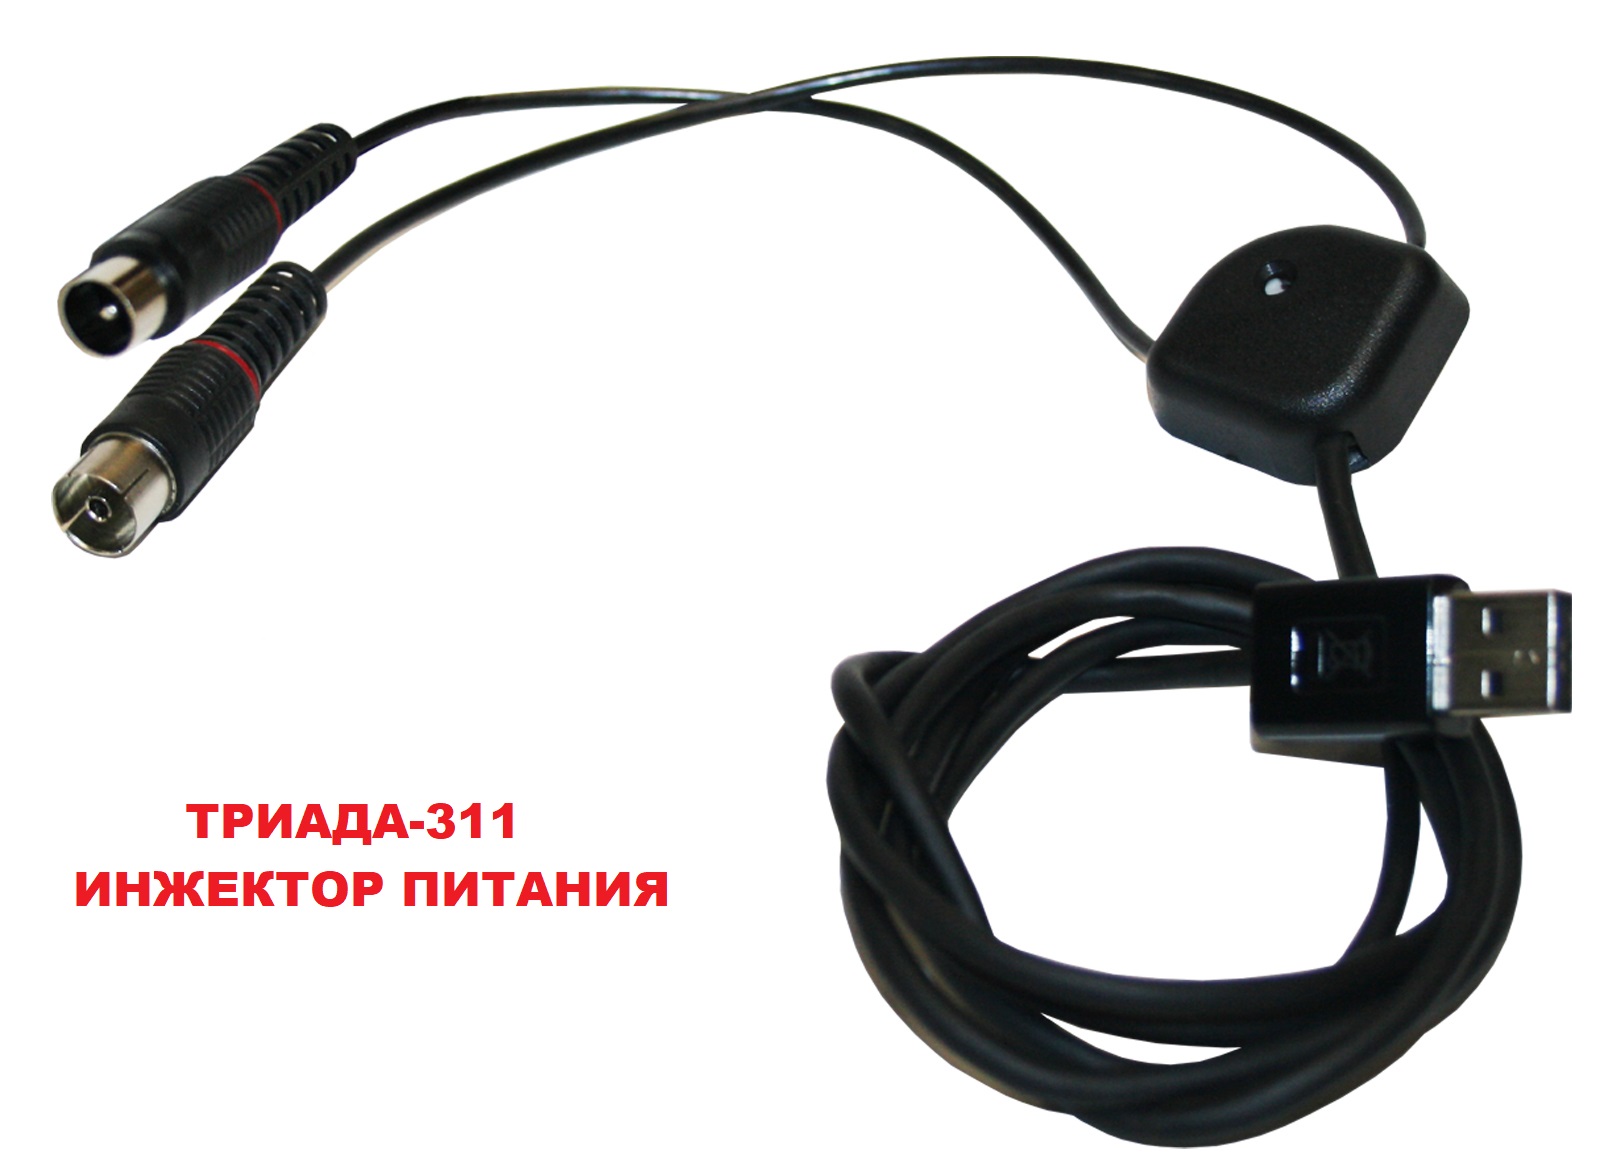 Инжектор питания 5 вольт Триада-311/antenna.ru для подачи питания на активную ТВ антенну. Питание подается по центральной жиле кабеля от USB приподключении к блоку питания с USB для мобильного телефона или от USB ресивера, телевизора.